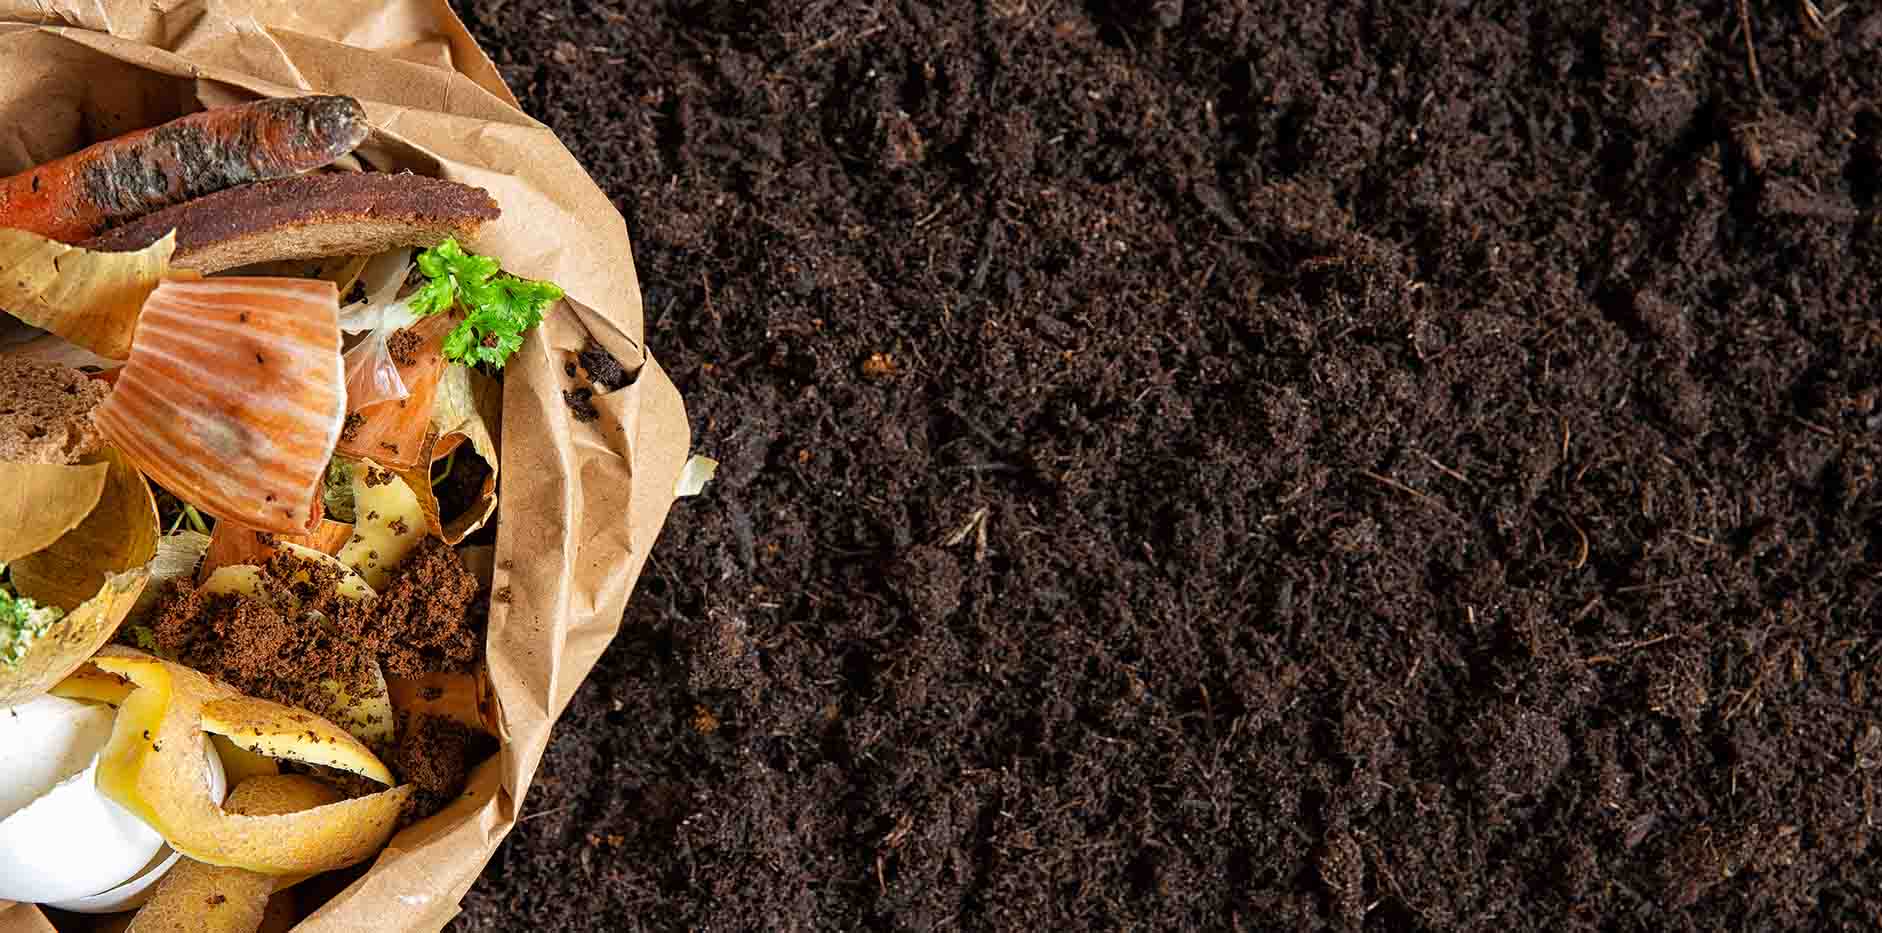 Kompost makinası Yemek Artıklarını Nasıl Kompost Haline Getiriyor?